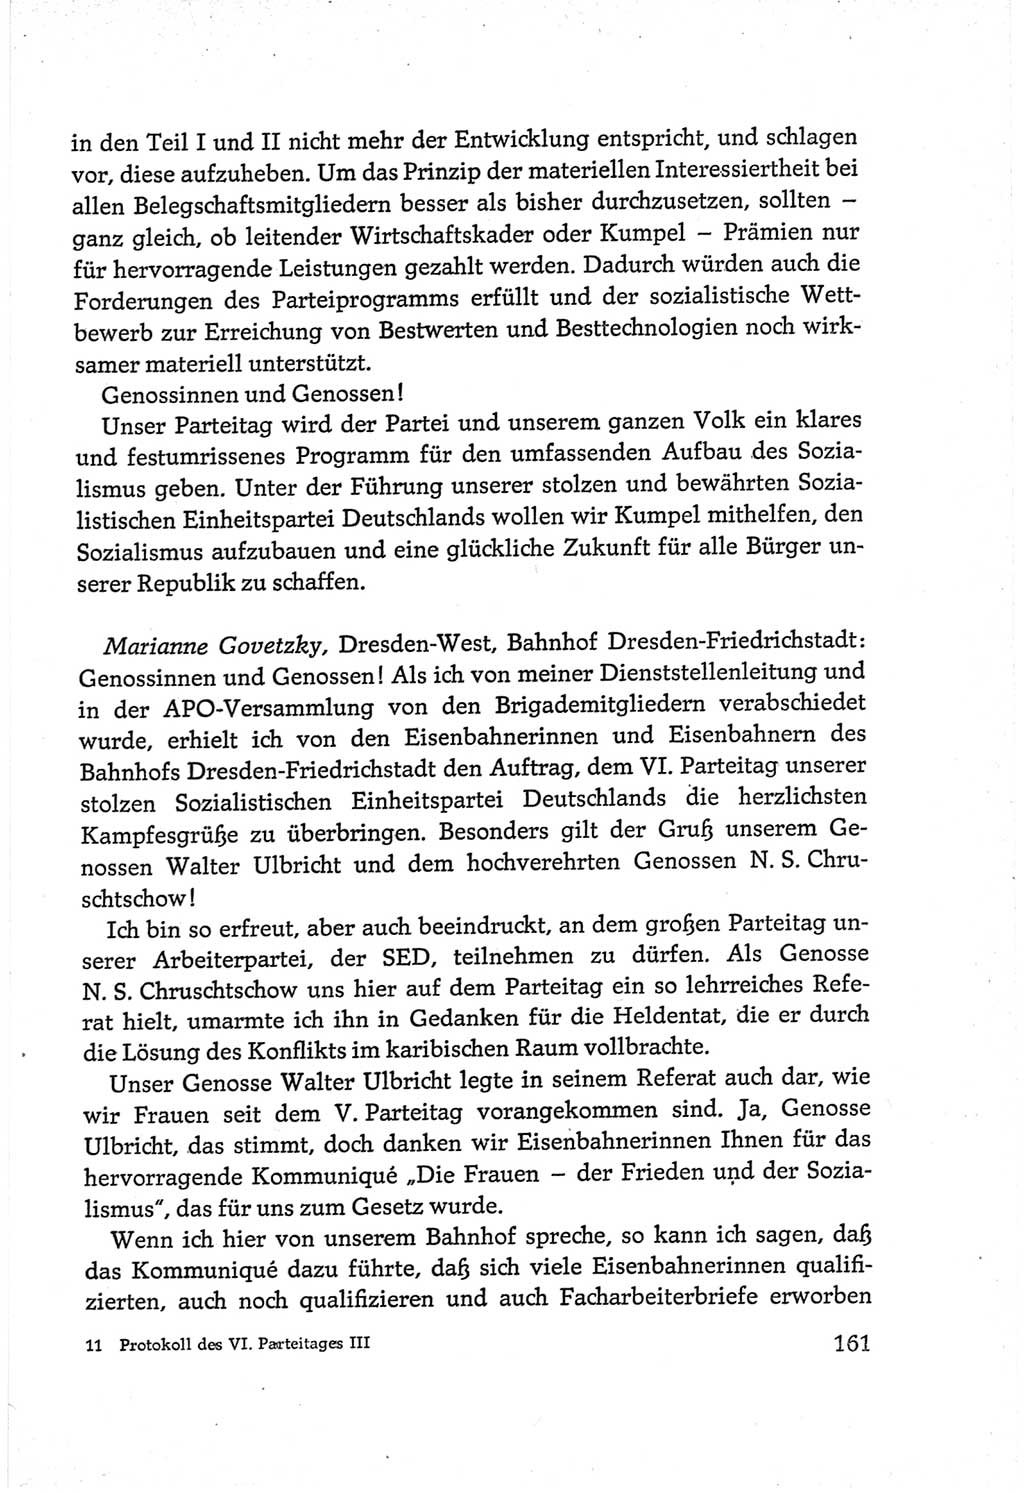 Protokoll der Verhandlungen des Ⅵ. Parteitages der Sozialistischen Einheitspartei Deutschlands (SED) [Deutsche Demokratische Republik (DDR)] 1963, Band Ⅲ, Seite 161 (Prot. Verh. Ⅵ. PT SED DDR 1963, Bd. Ⅲ, S. 161)